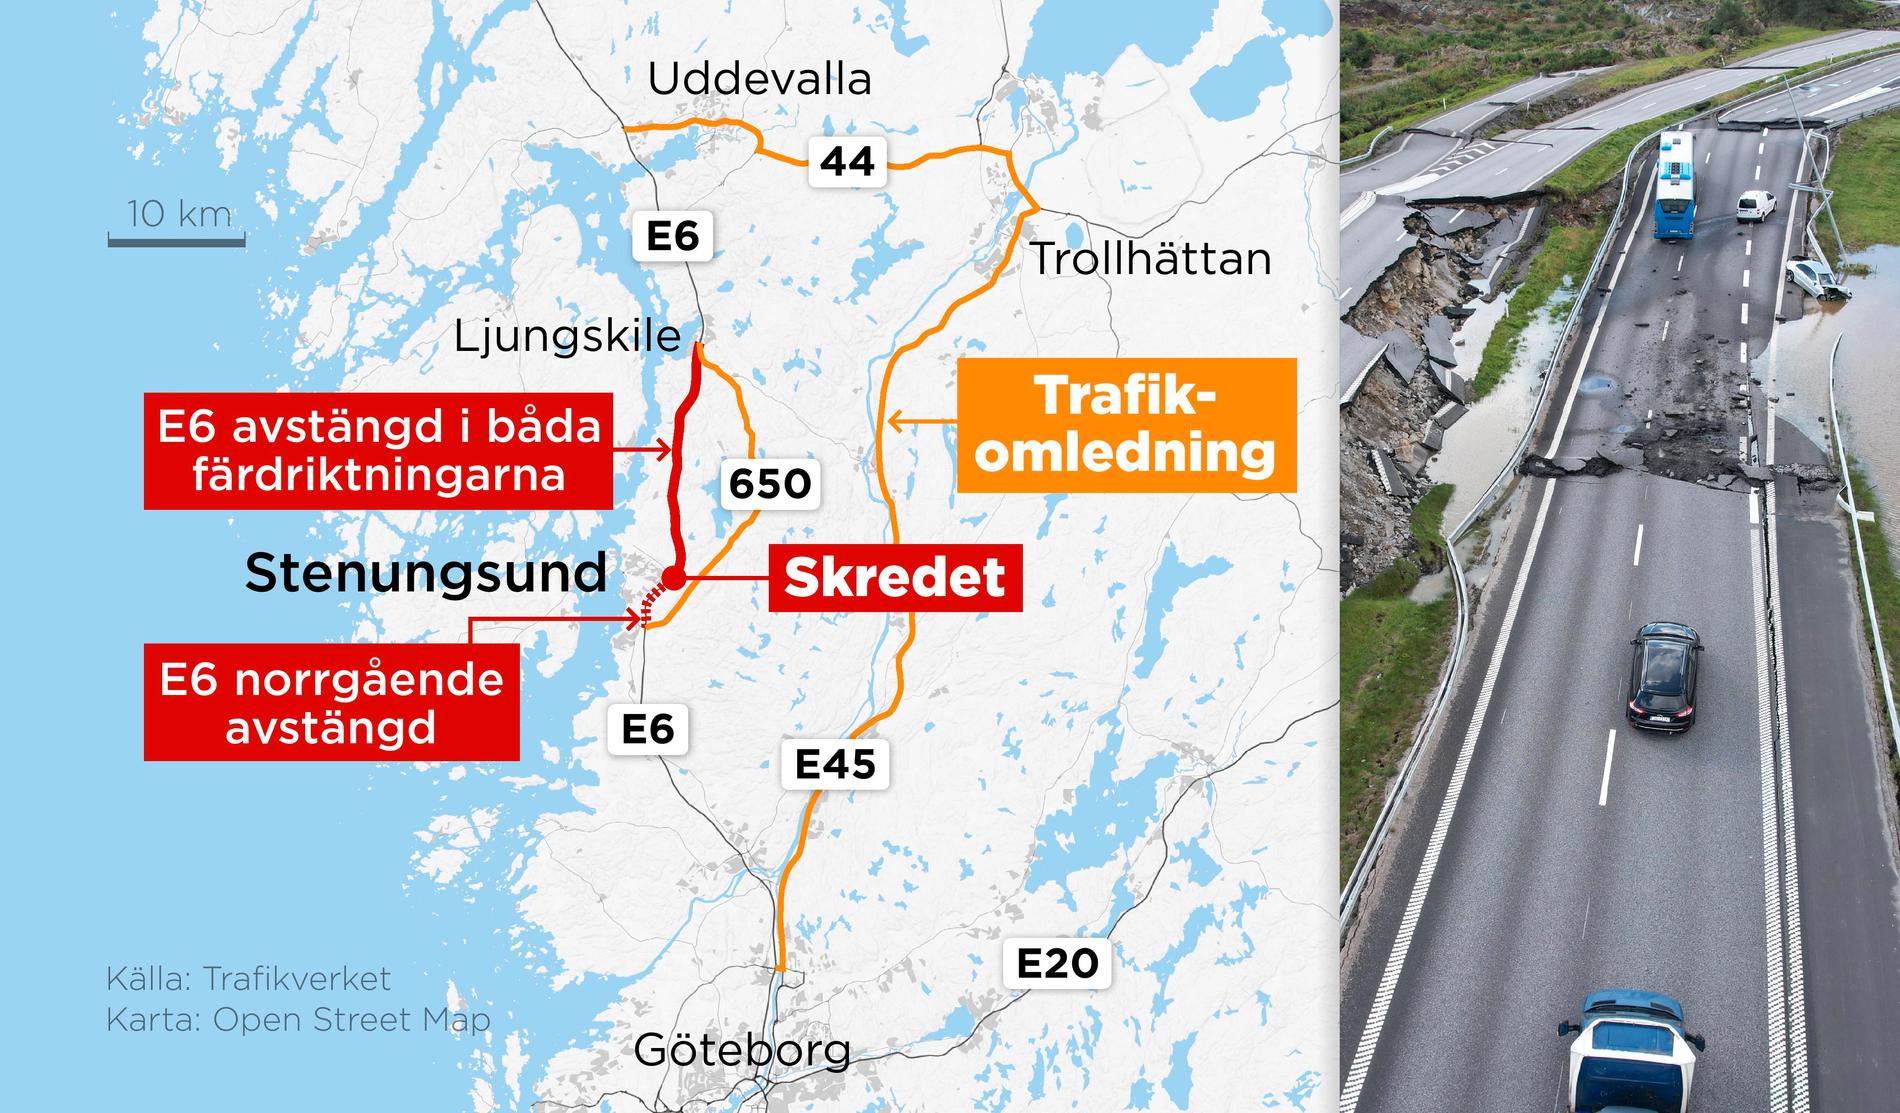 Kartan visar omledning av trafik på E6 efter avstängningen av europavägen mellan Stenungsund och Ljungskile.